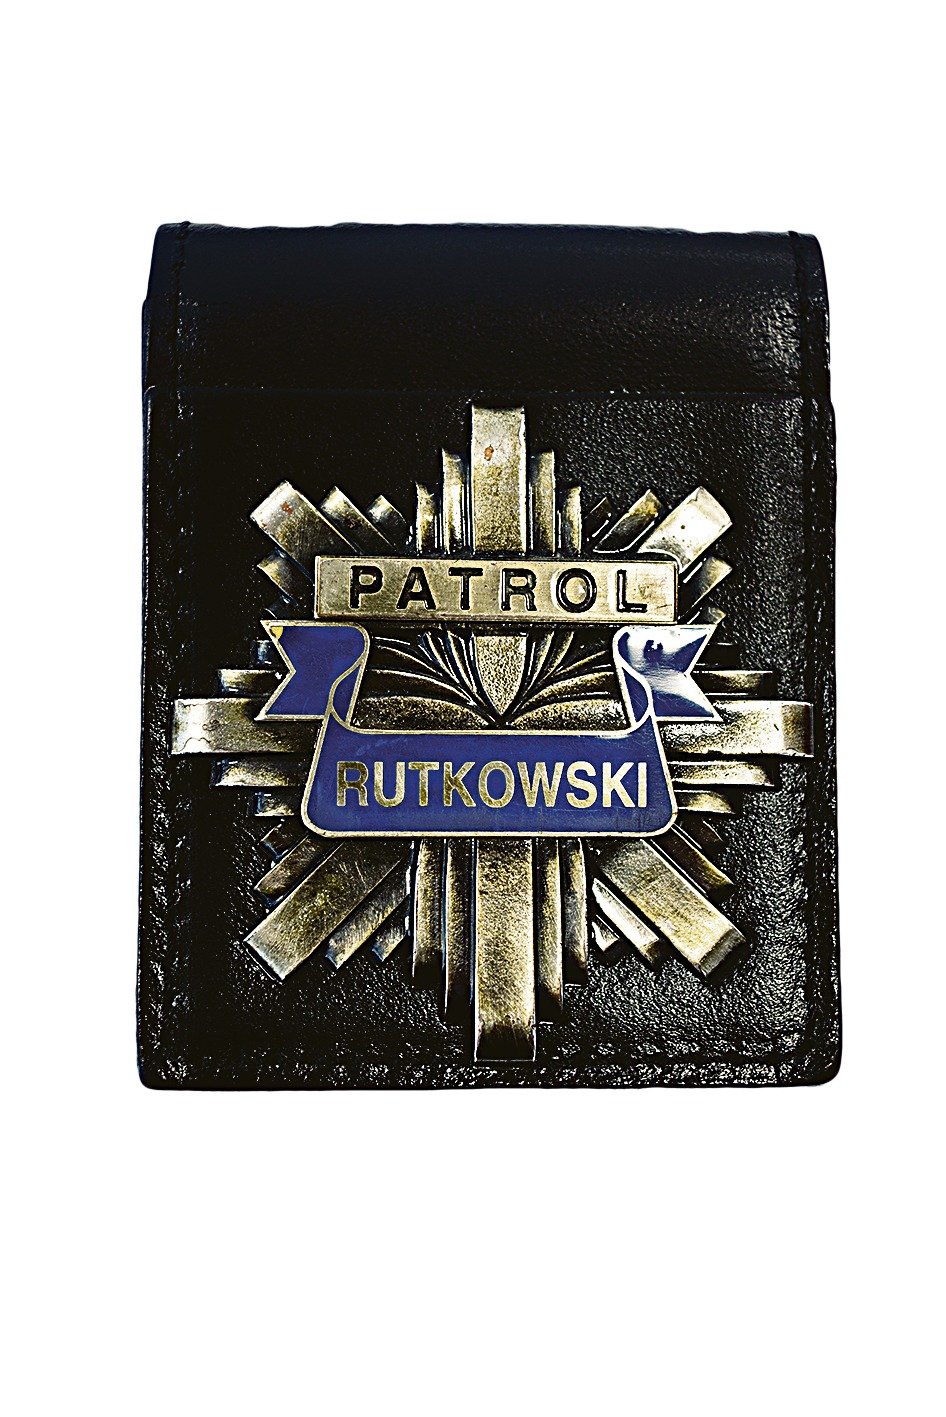 Odznak Rutkowského firmy připomíná ten policejní...